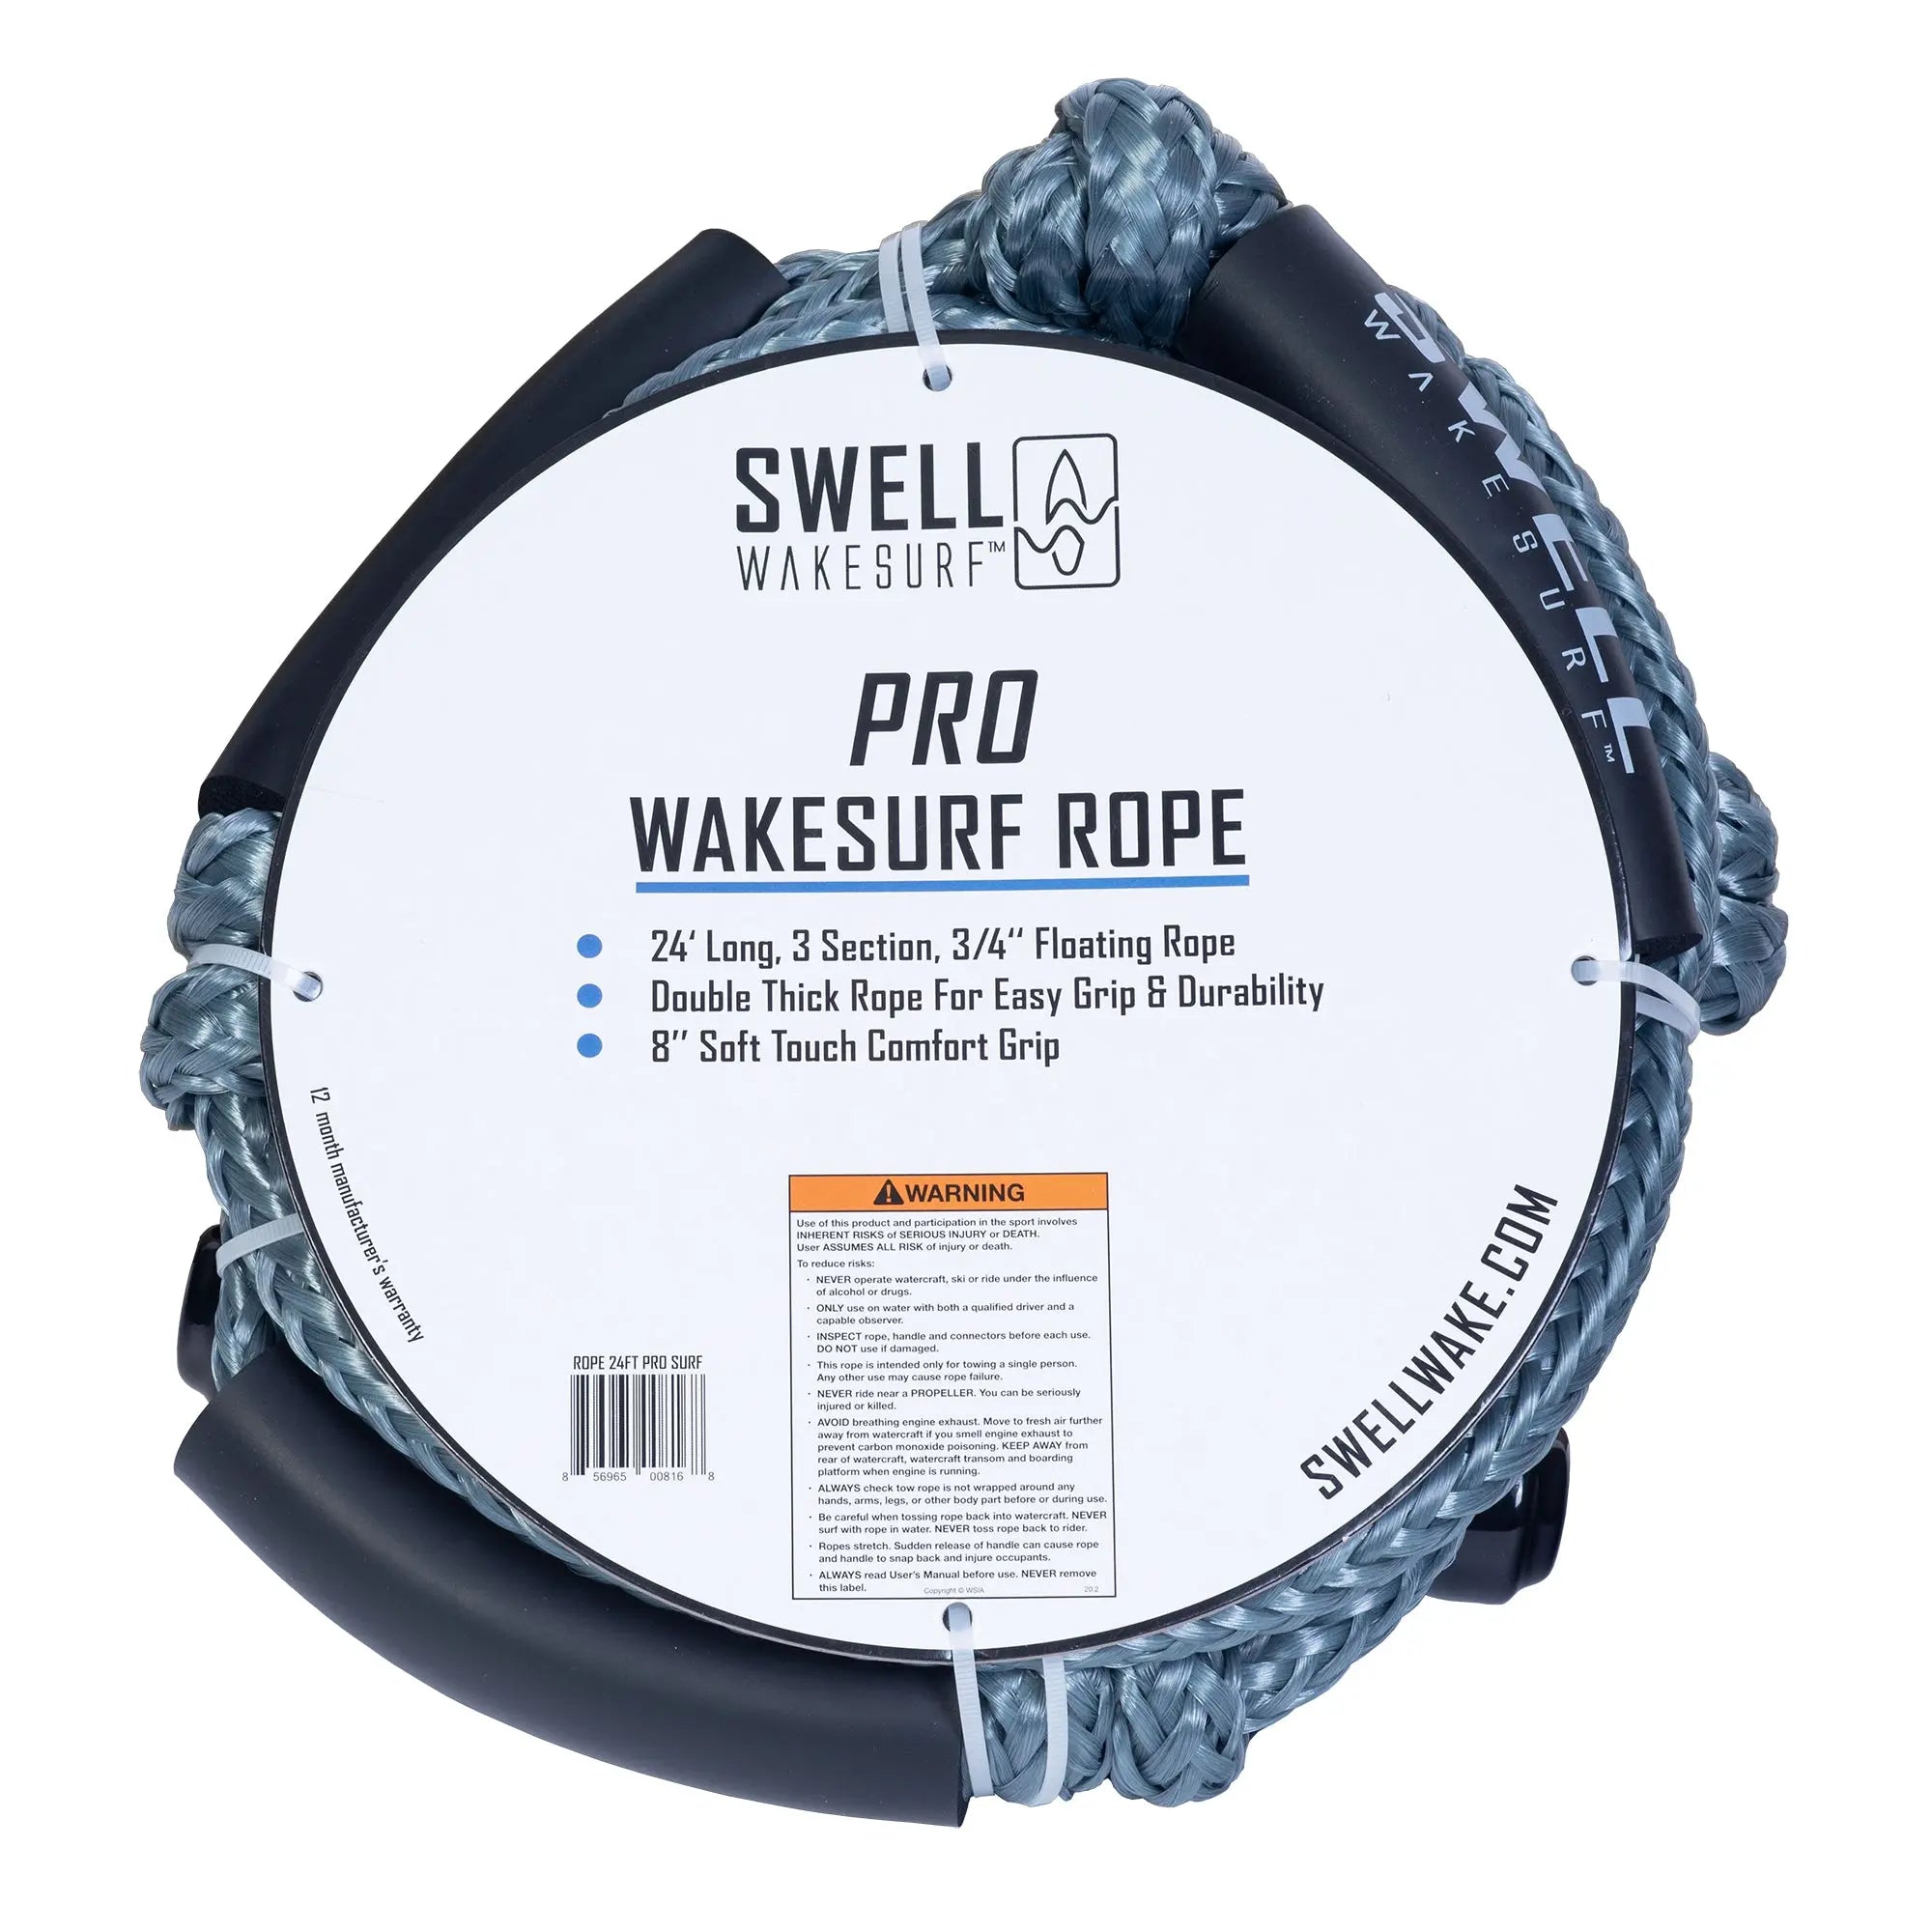 SWELL Wakesurf Pro Wakesurf Rope - 24 ft Adjustable Length SWELL Wakesurf